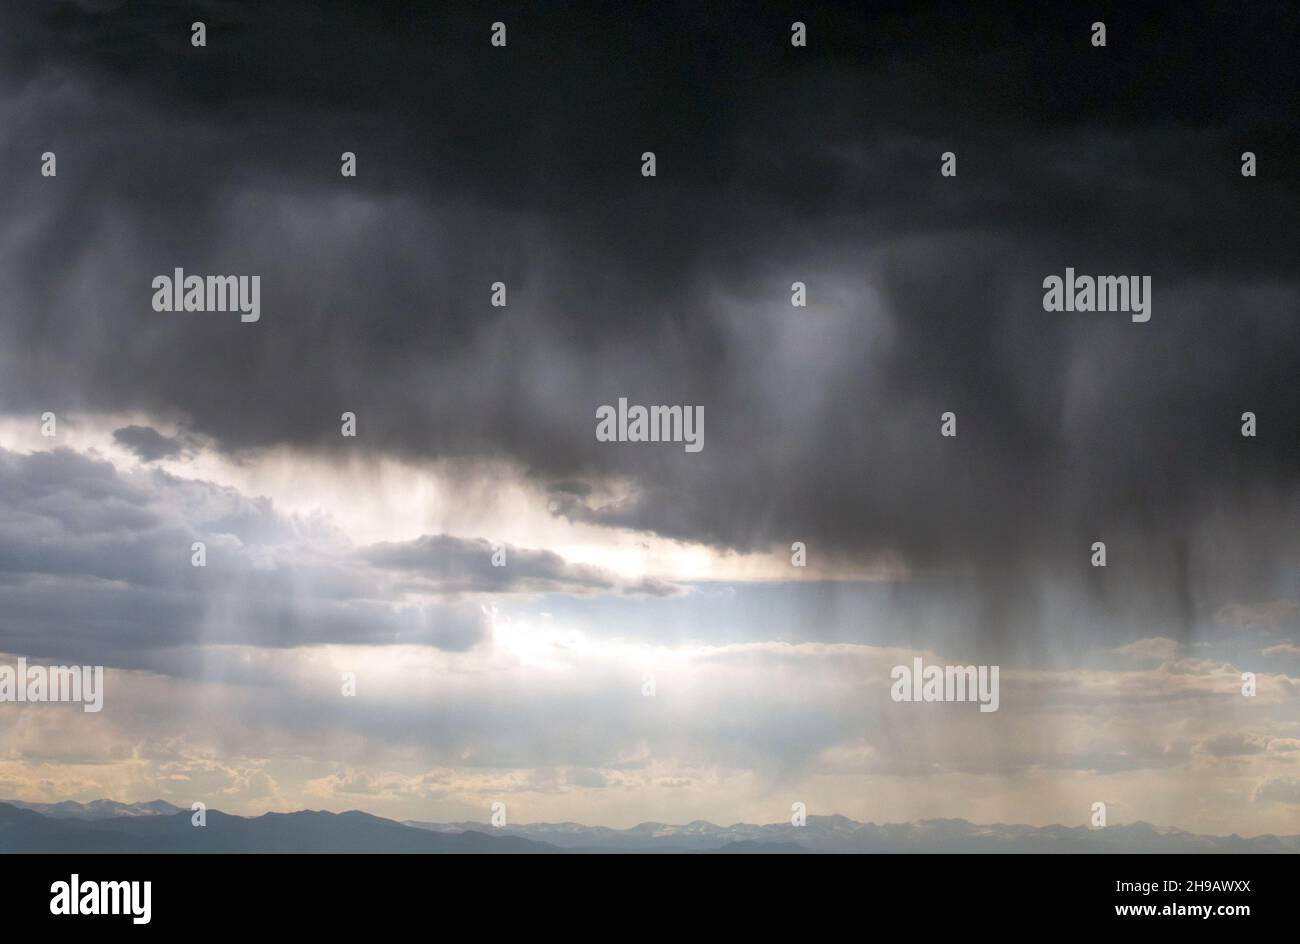 Le nuvole di pioggia si aprono sulle montagne rocciose in Colorado, inviando torrenti di acqua giù sulla terra Foto Stock